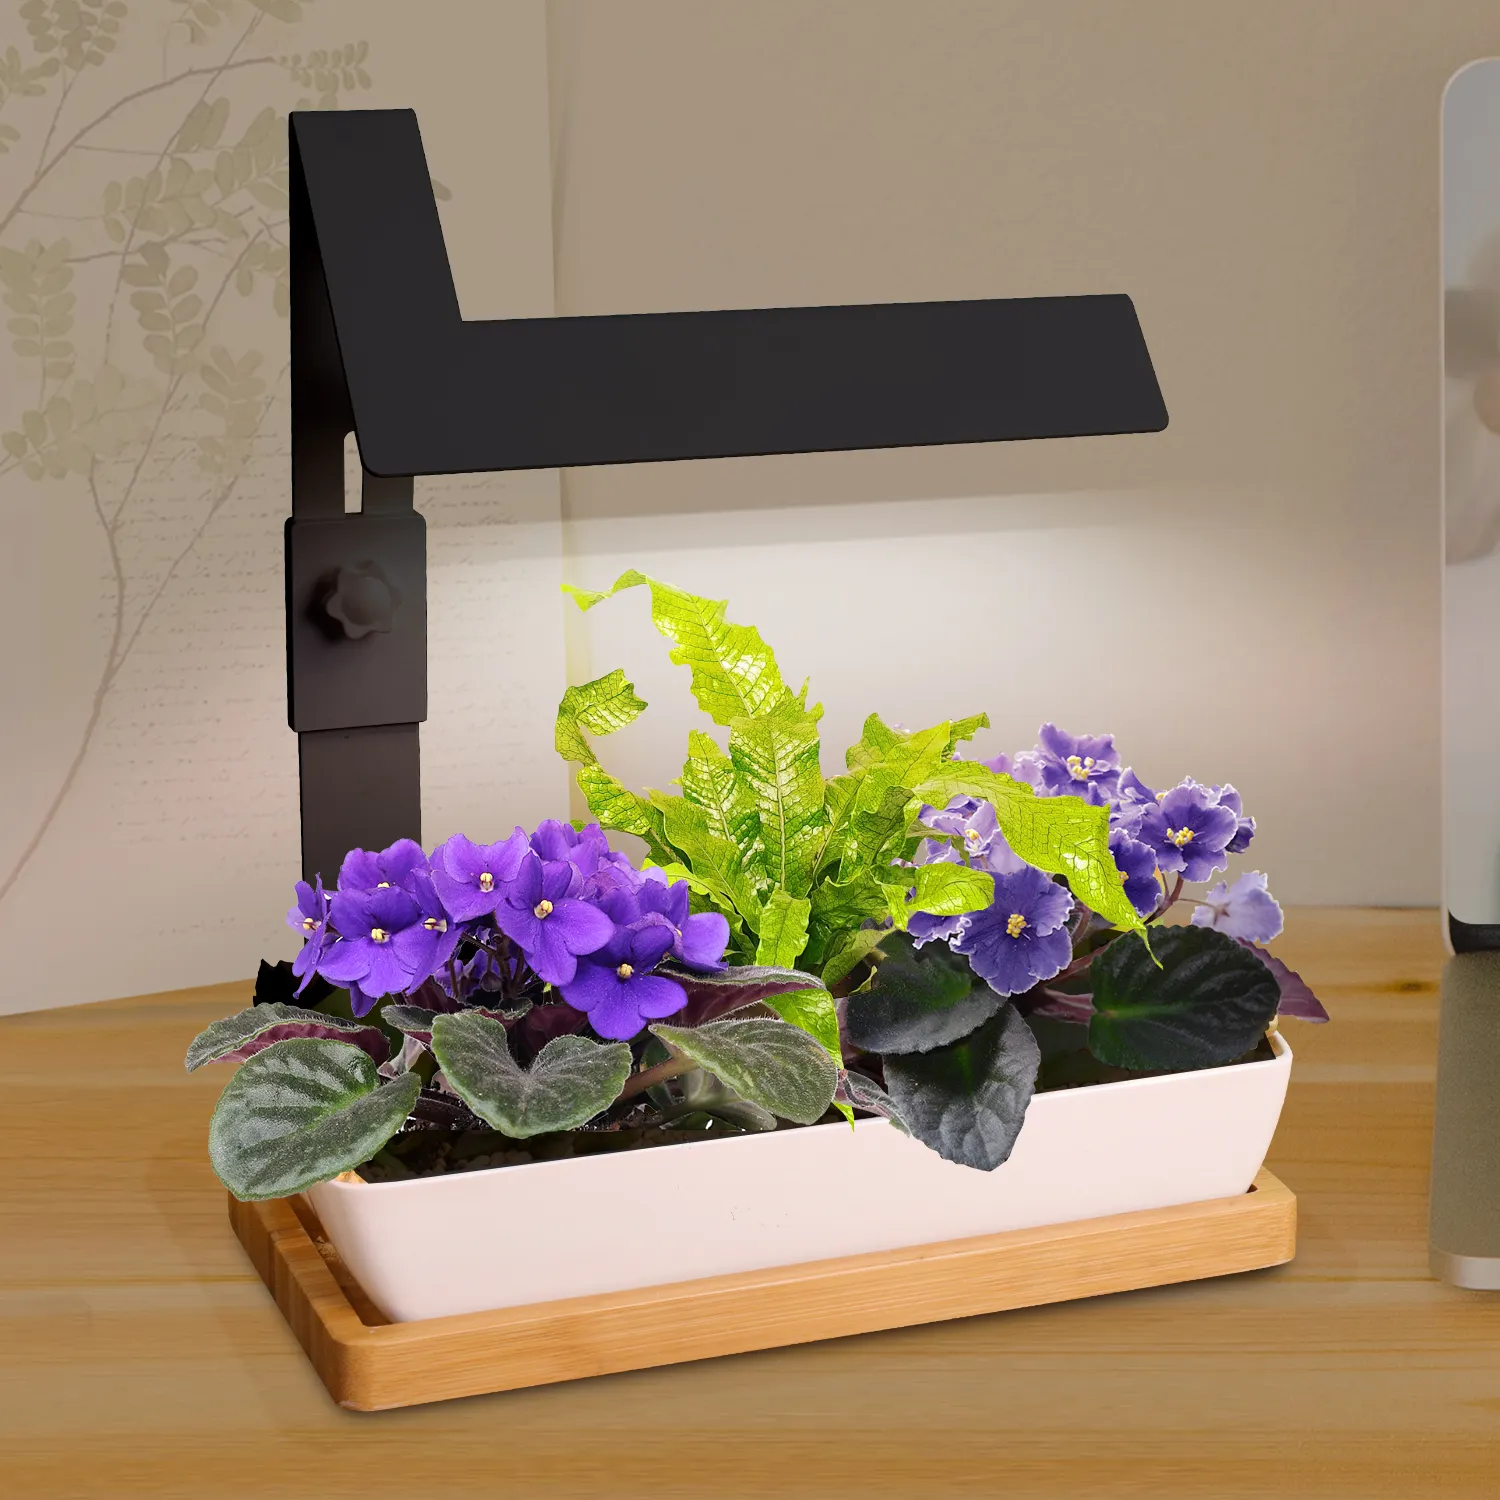 Комнатный Декор J & C minigarden, приспособление для выращивания растений в офисе, саде, комнатном горшке